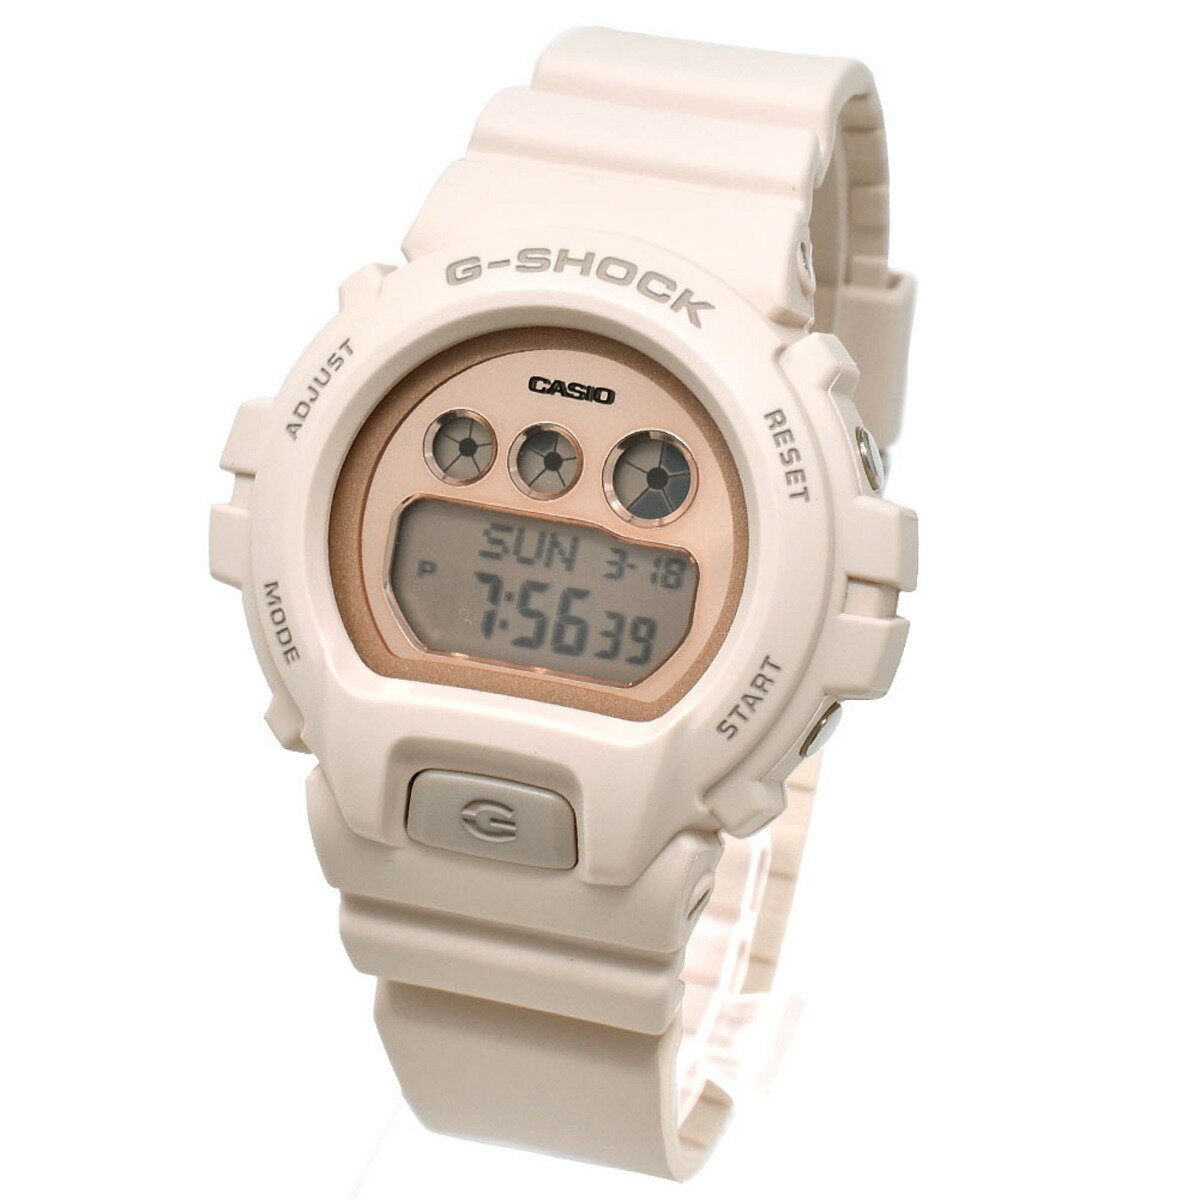 カシオ CASIO 腕時計 G-SHOCK Gショック GMD-S6900MC-4ER デジタル時計 メンズ レディース 男女兼用 ウォッチ ベージュ 海外正規品